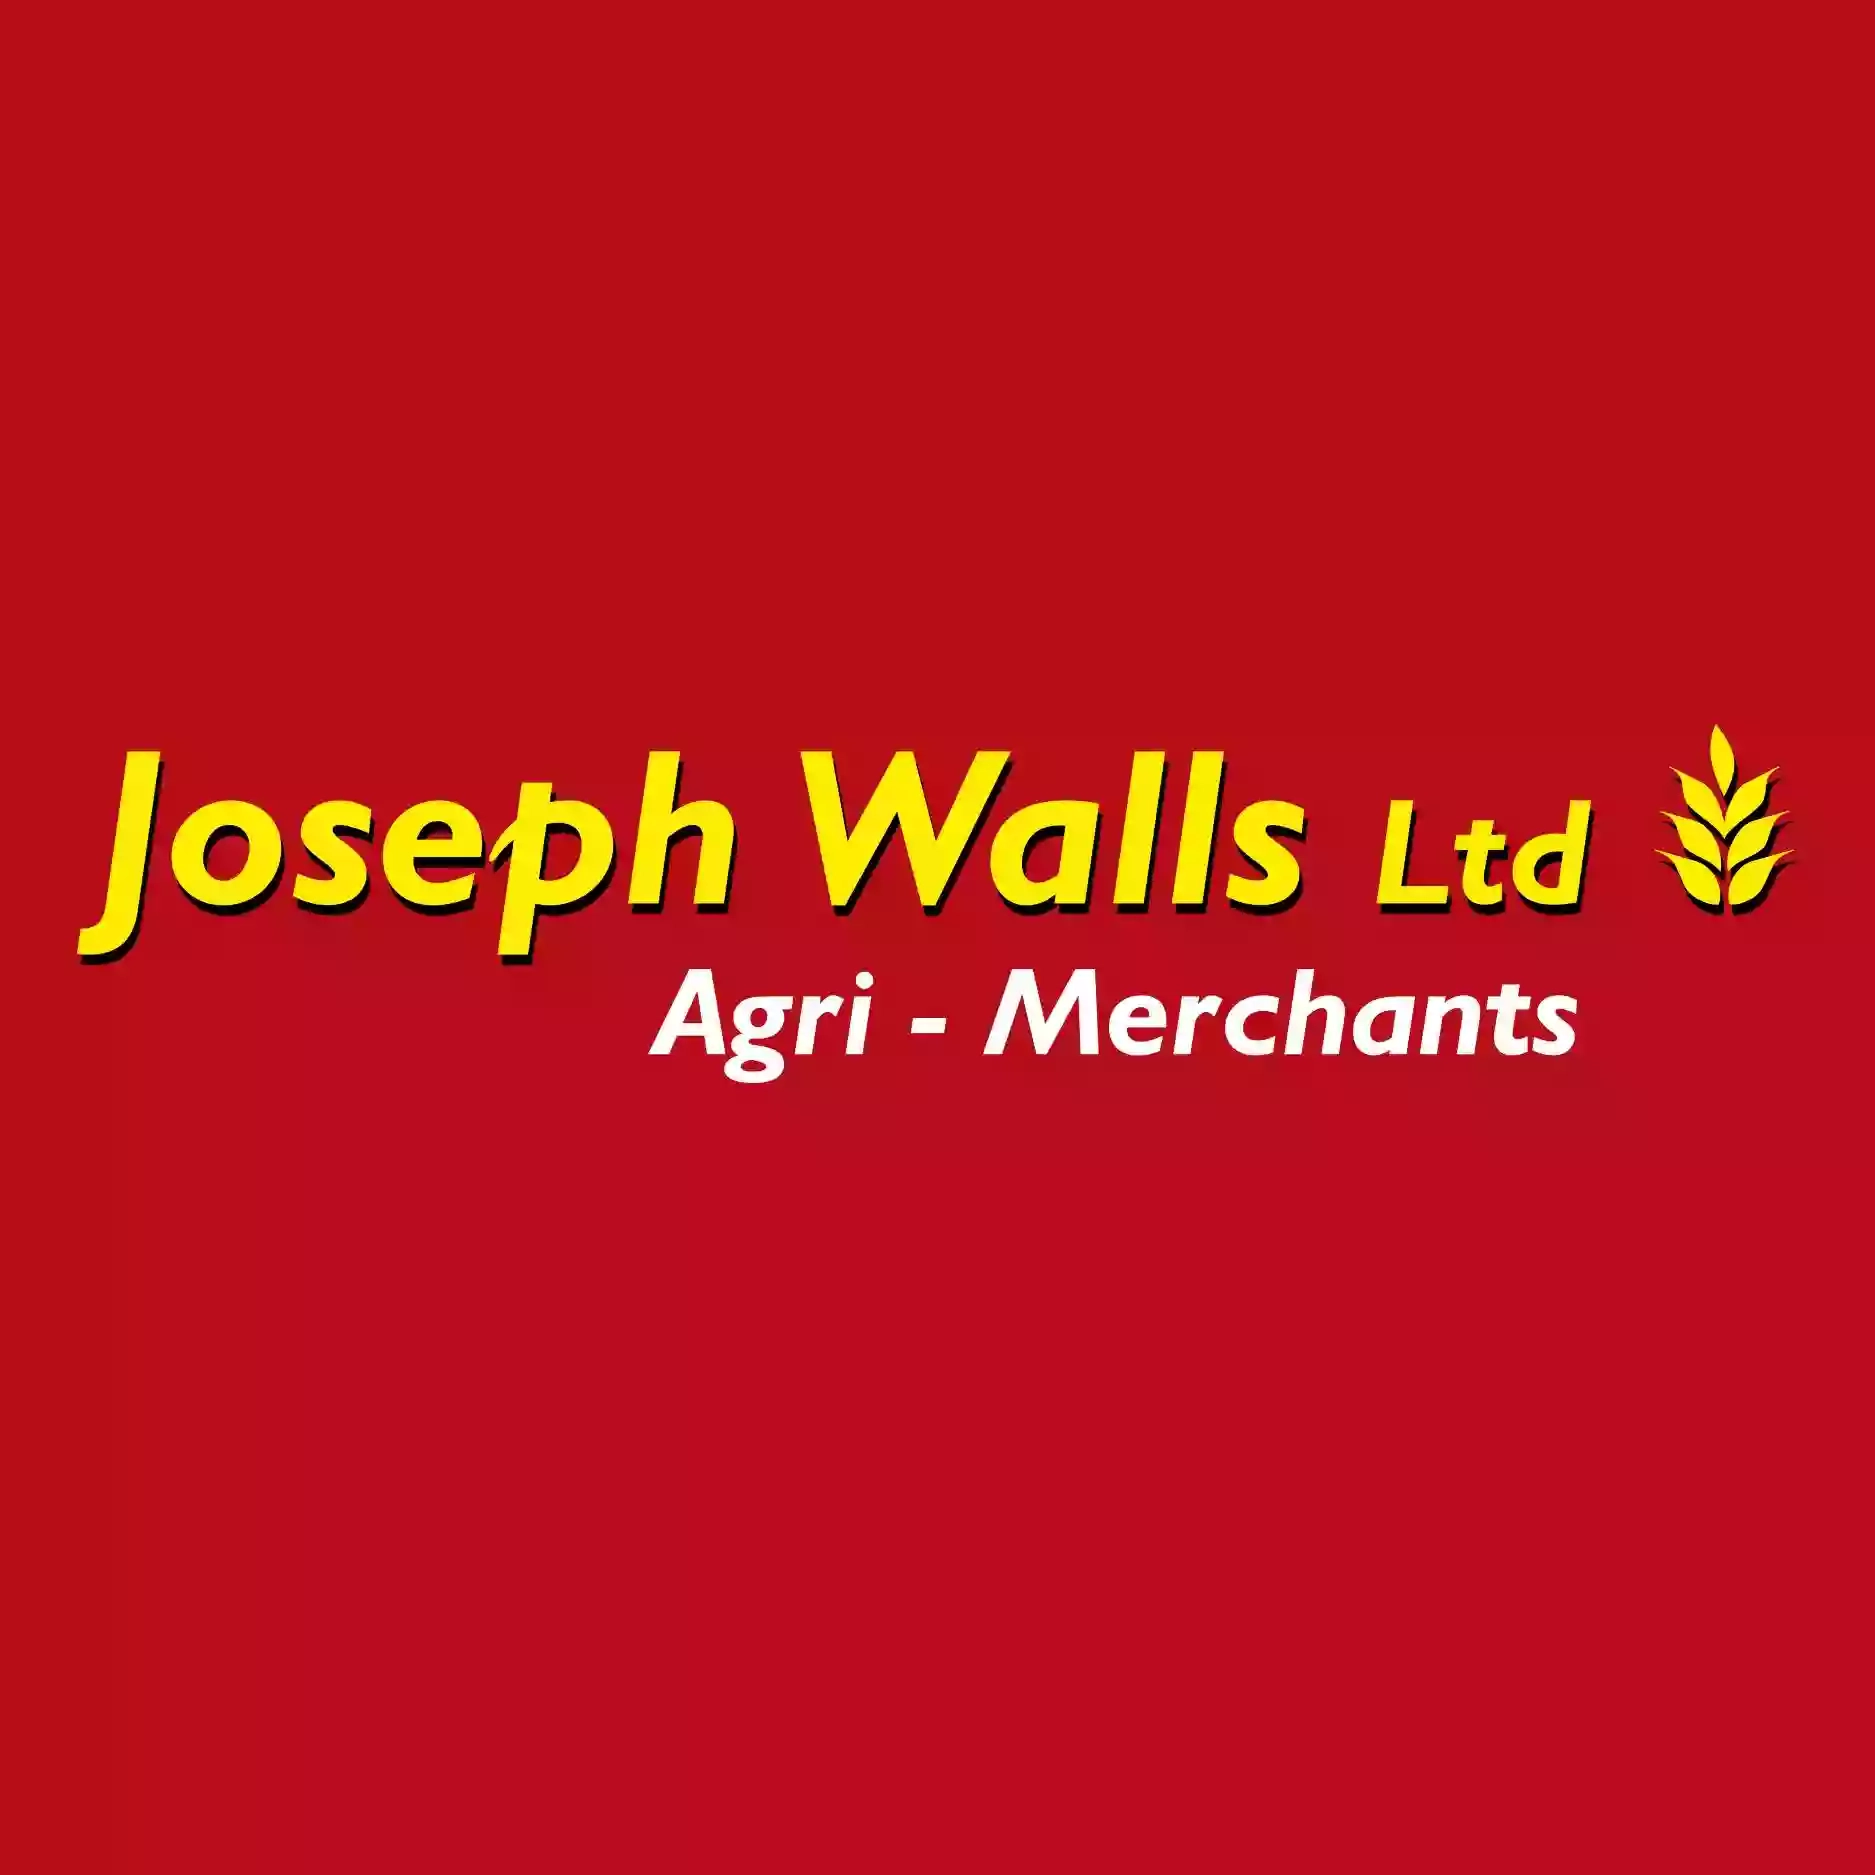 Joseph Walls Ltd